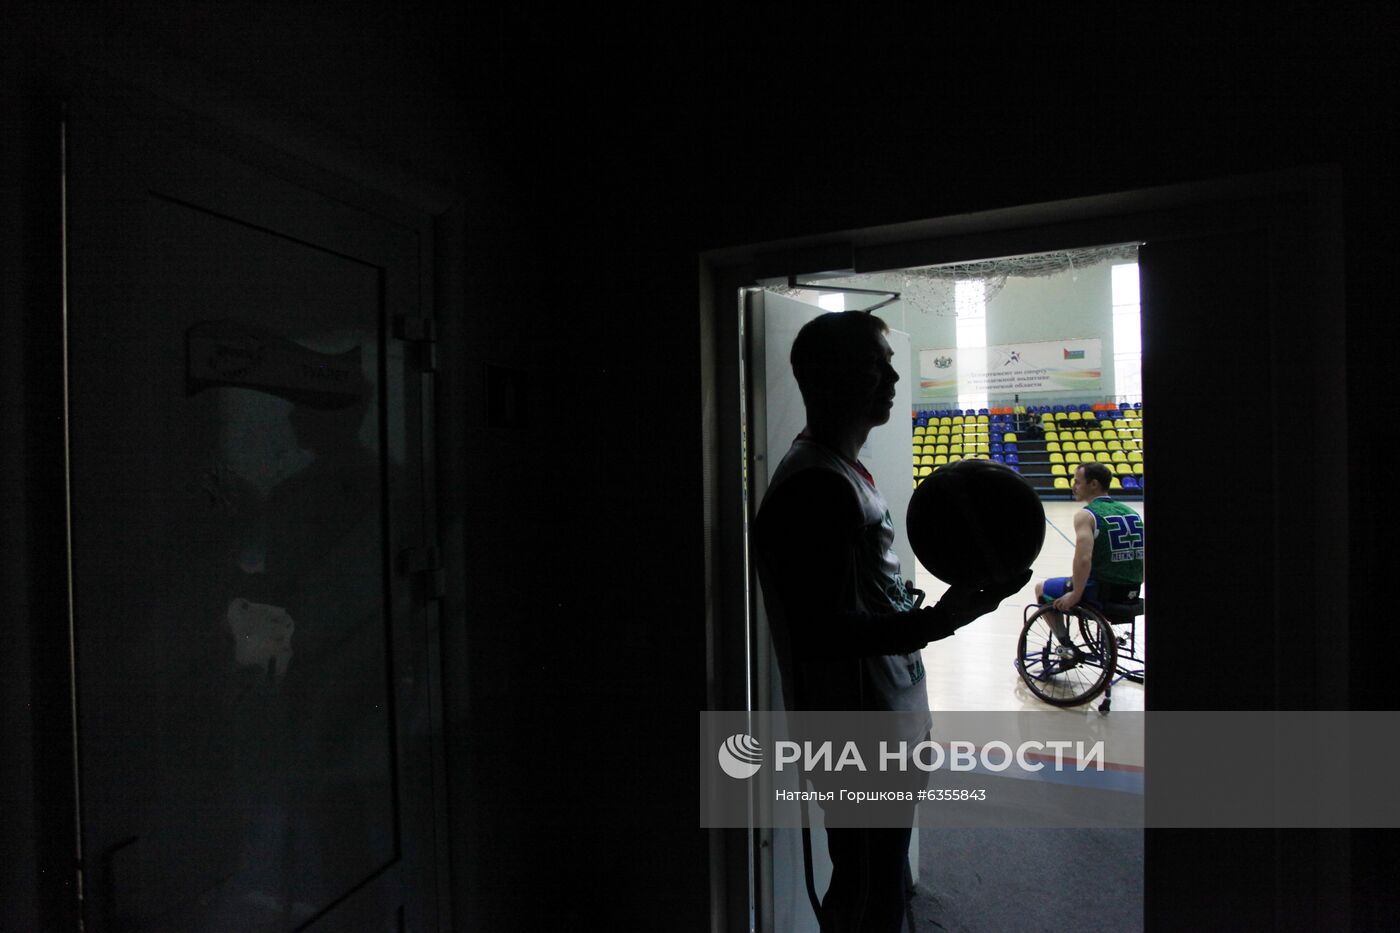 Всероссийский турнир по баскетболу на колясках